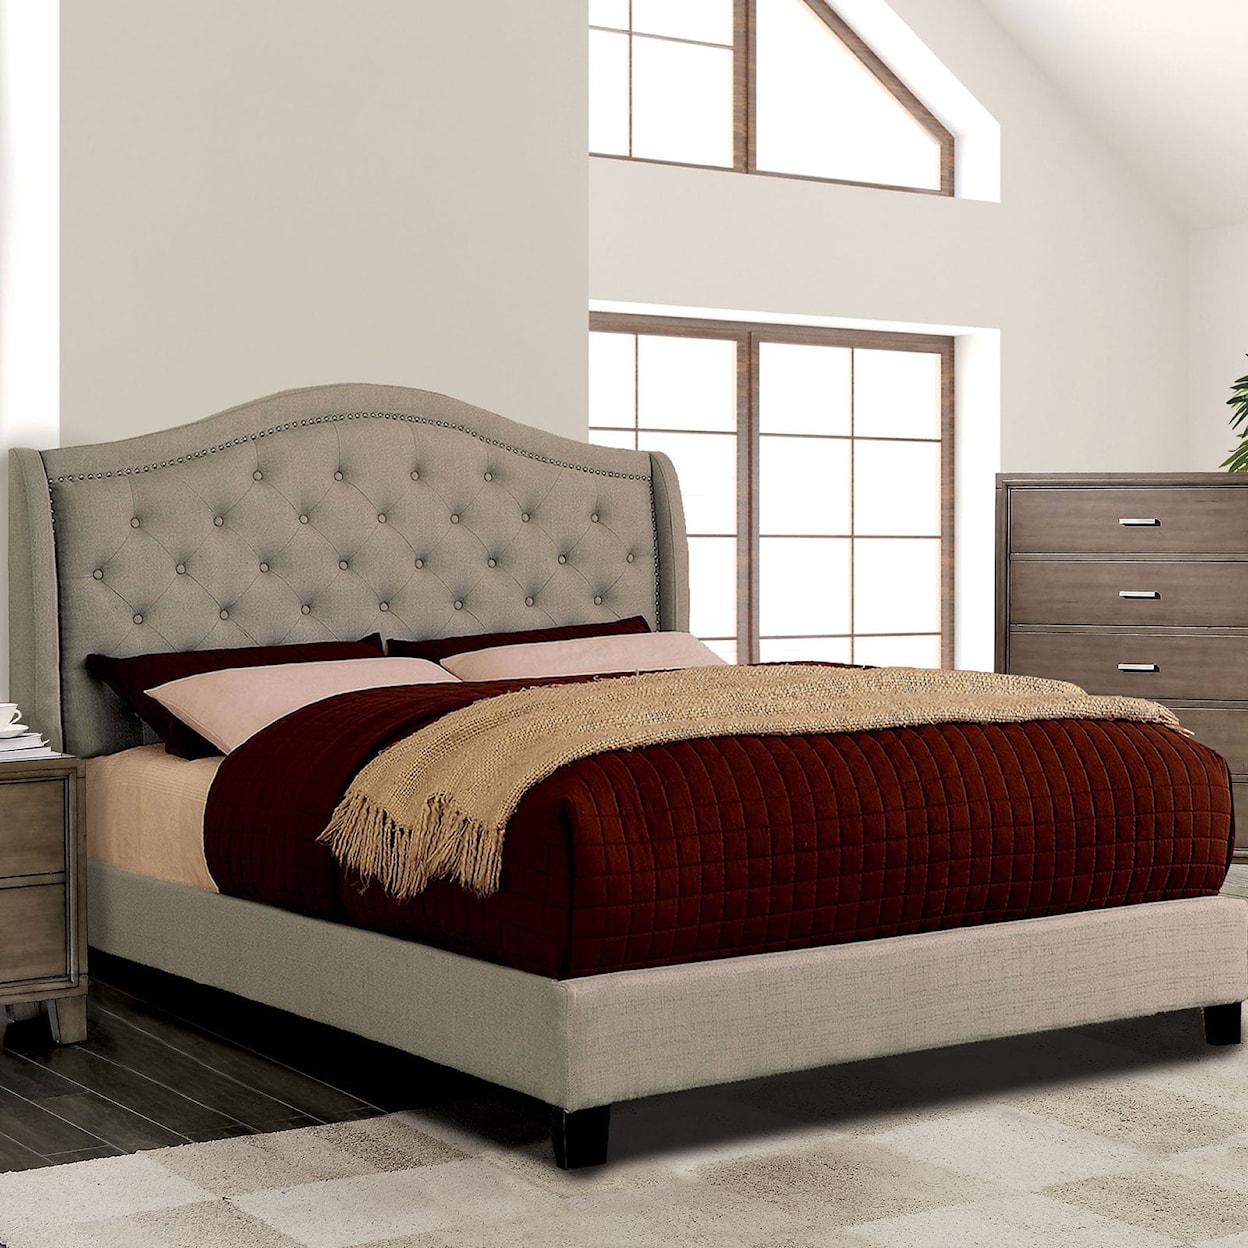 FUSA Carly Full Bed, Warm Gray